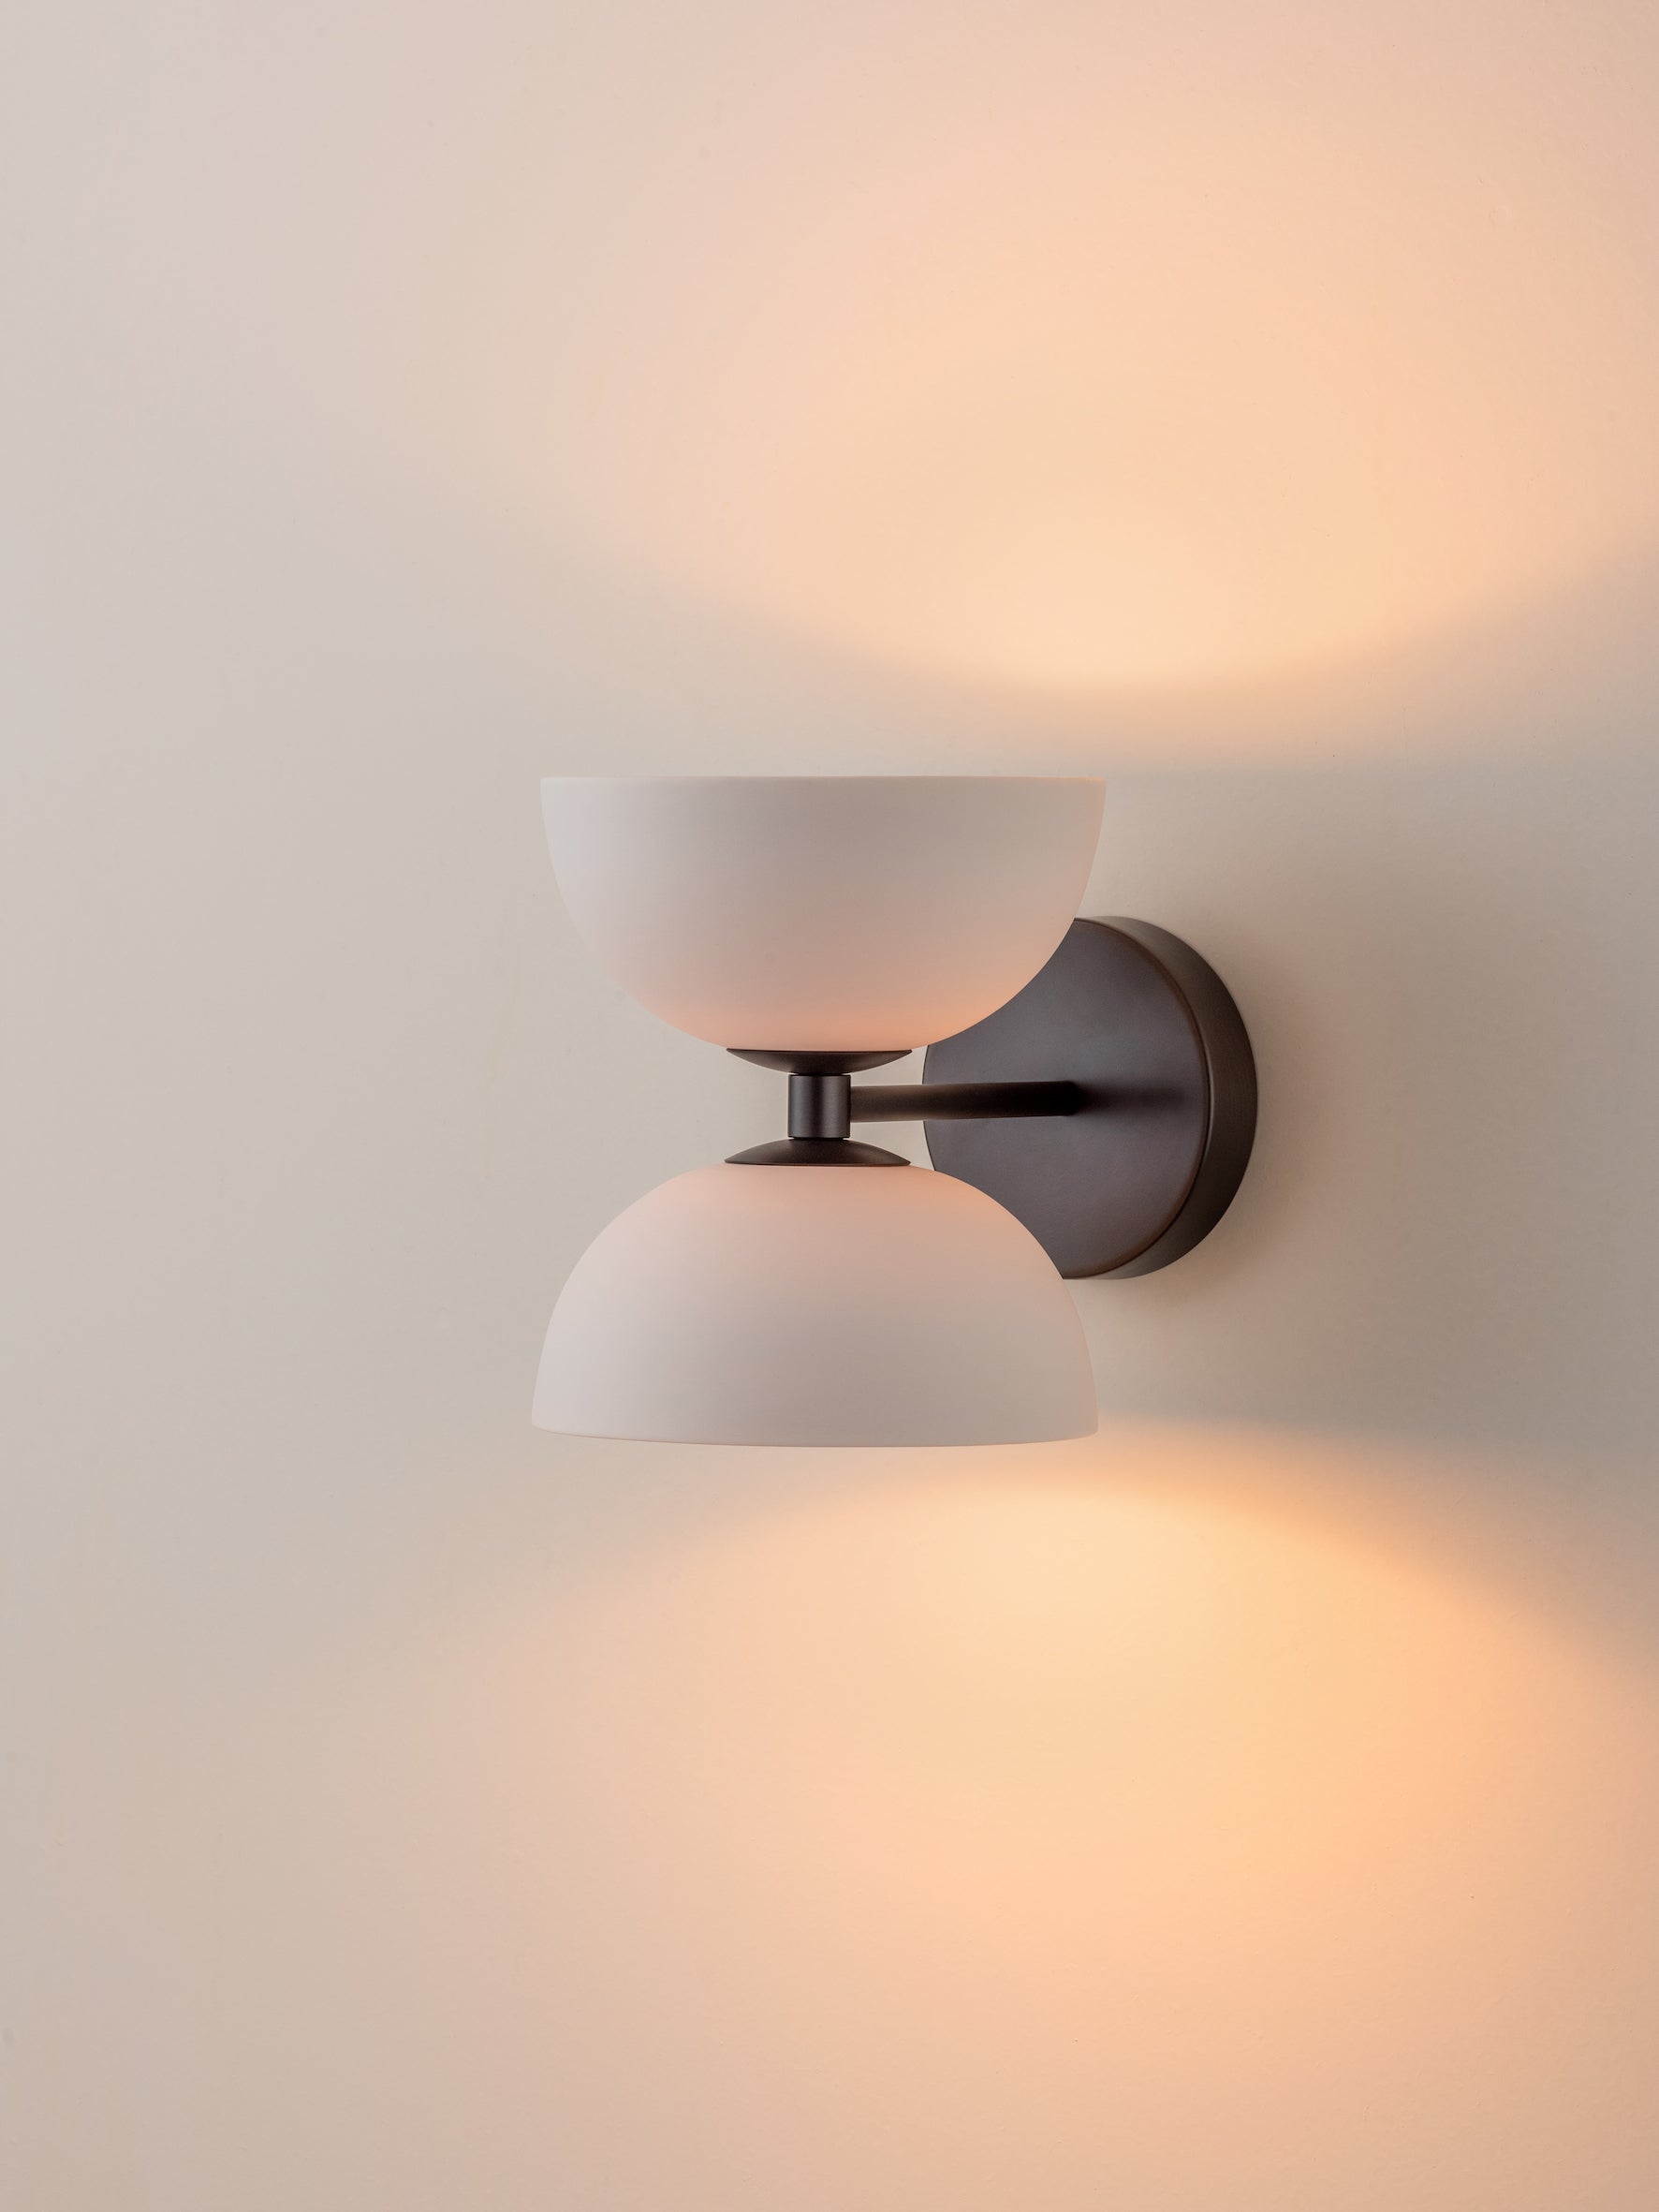 Ruzo - 2 light bronze and porcelain wall light | Wall Light | Lights & Lamps | UK | Modern Affordable Designer Lighting